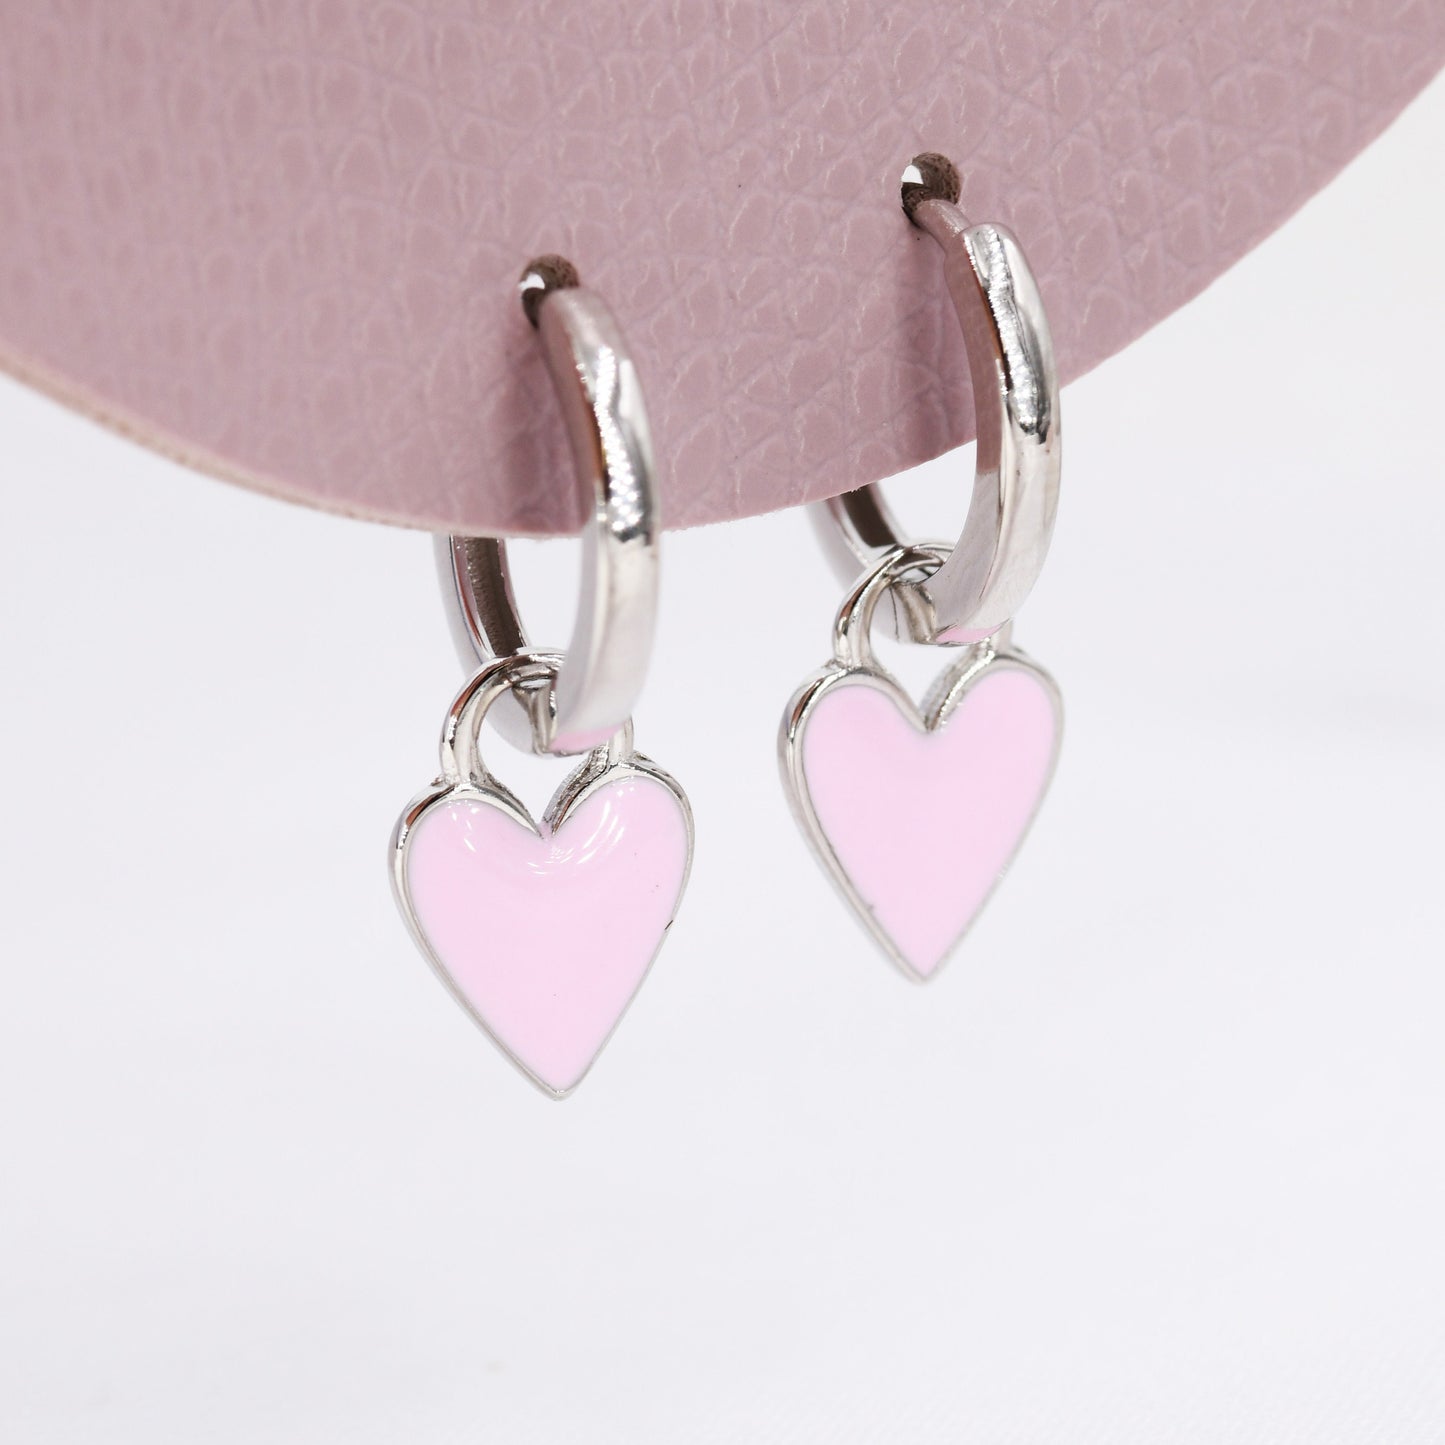 Pink Enamel Heart Earrings in Sterling Silver, Detachable Heart Charm Dangle Hoop Earrings, Interchangeable